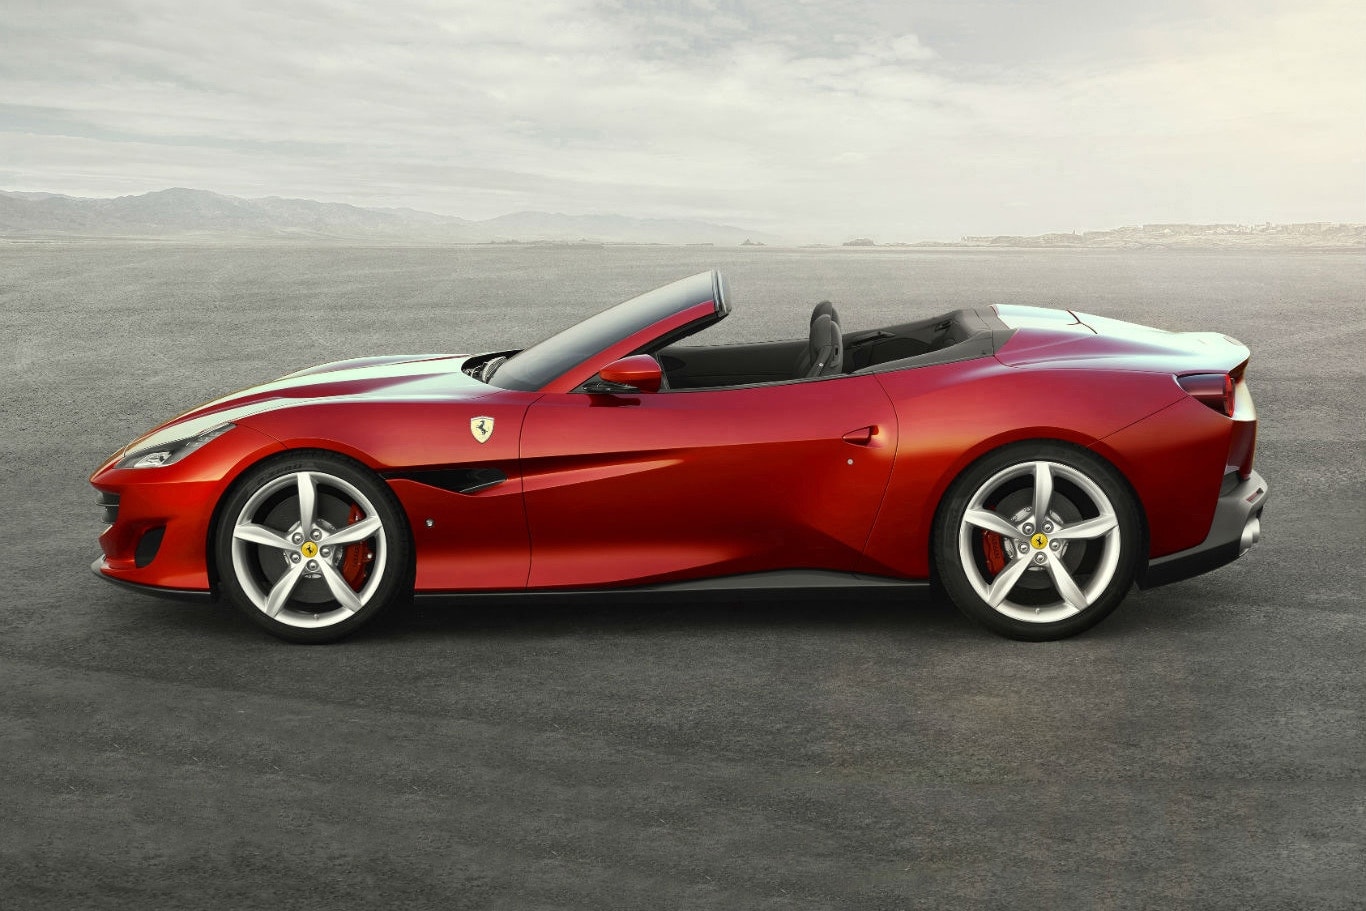 Ferrari 公佈新款跑車 Portofino 官方圖片